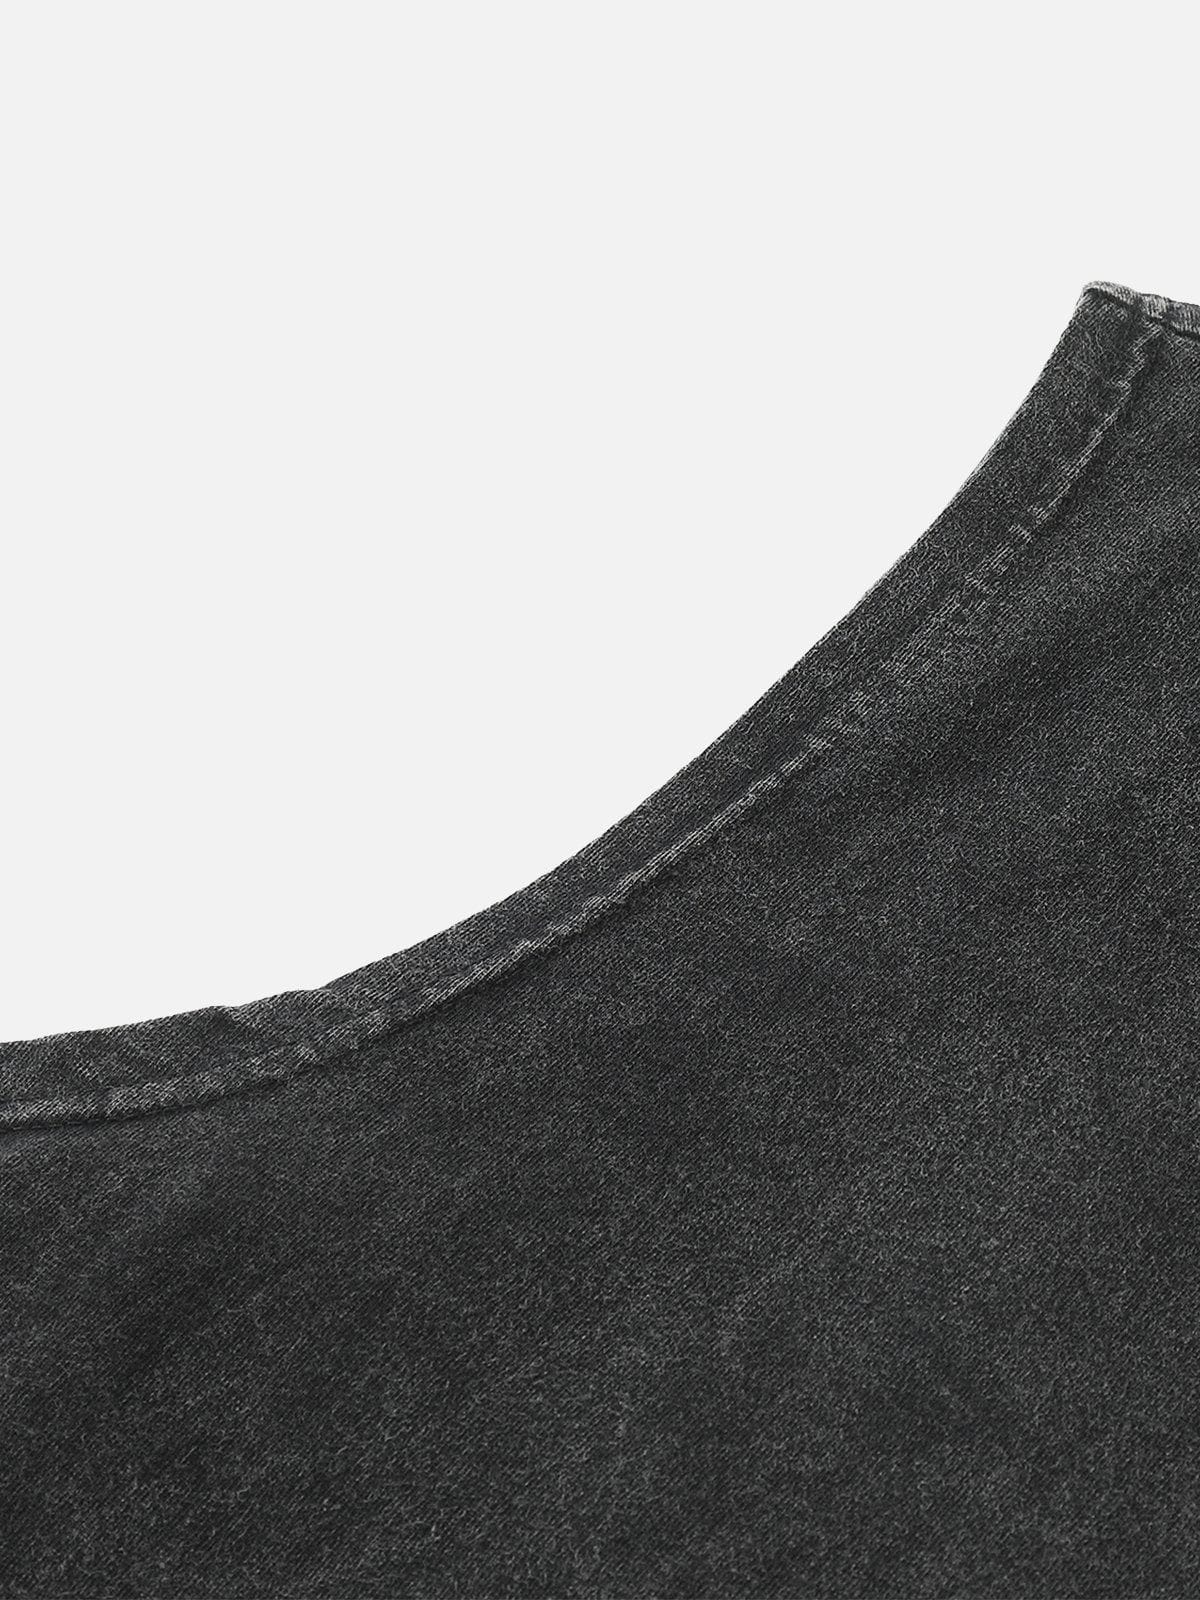 NEV Cross Leather Patch Sewn Vest